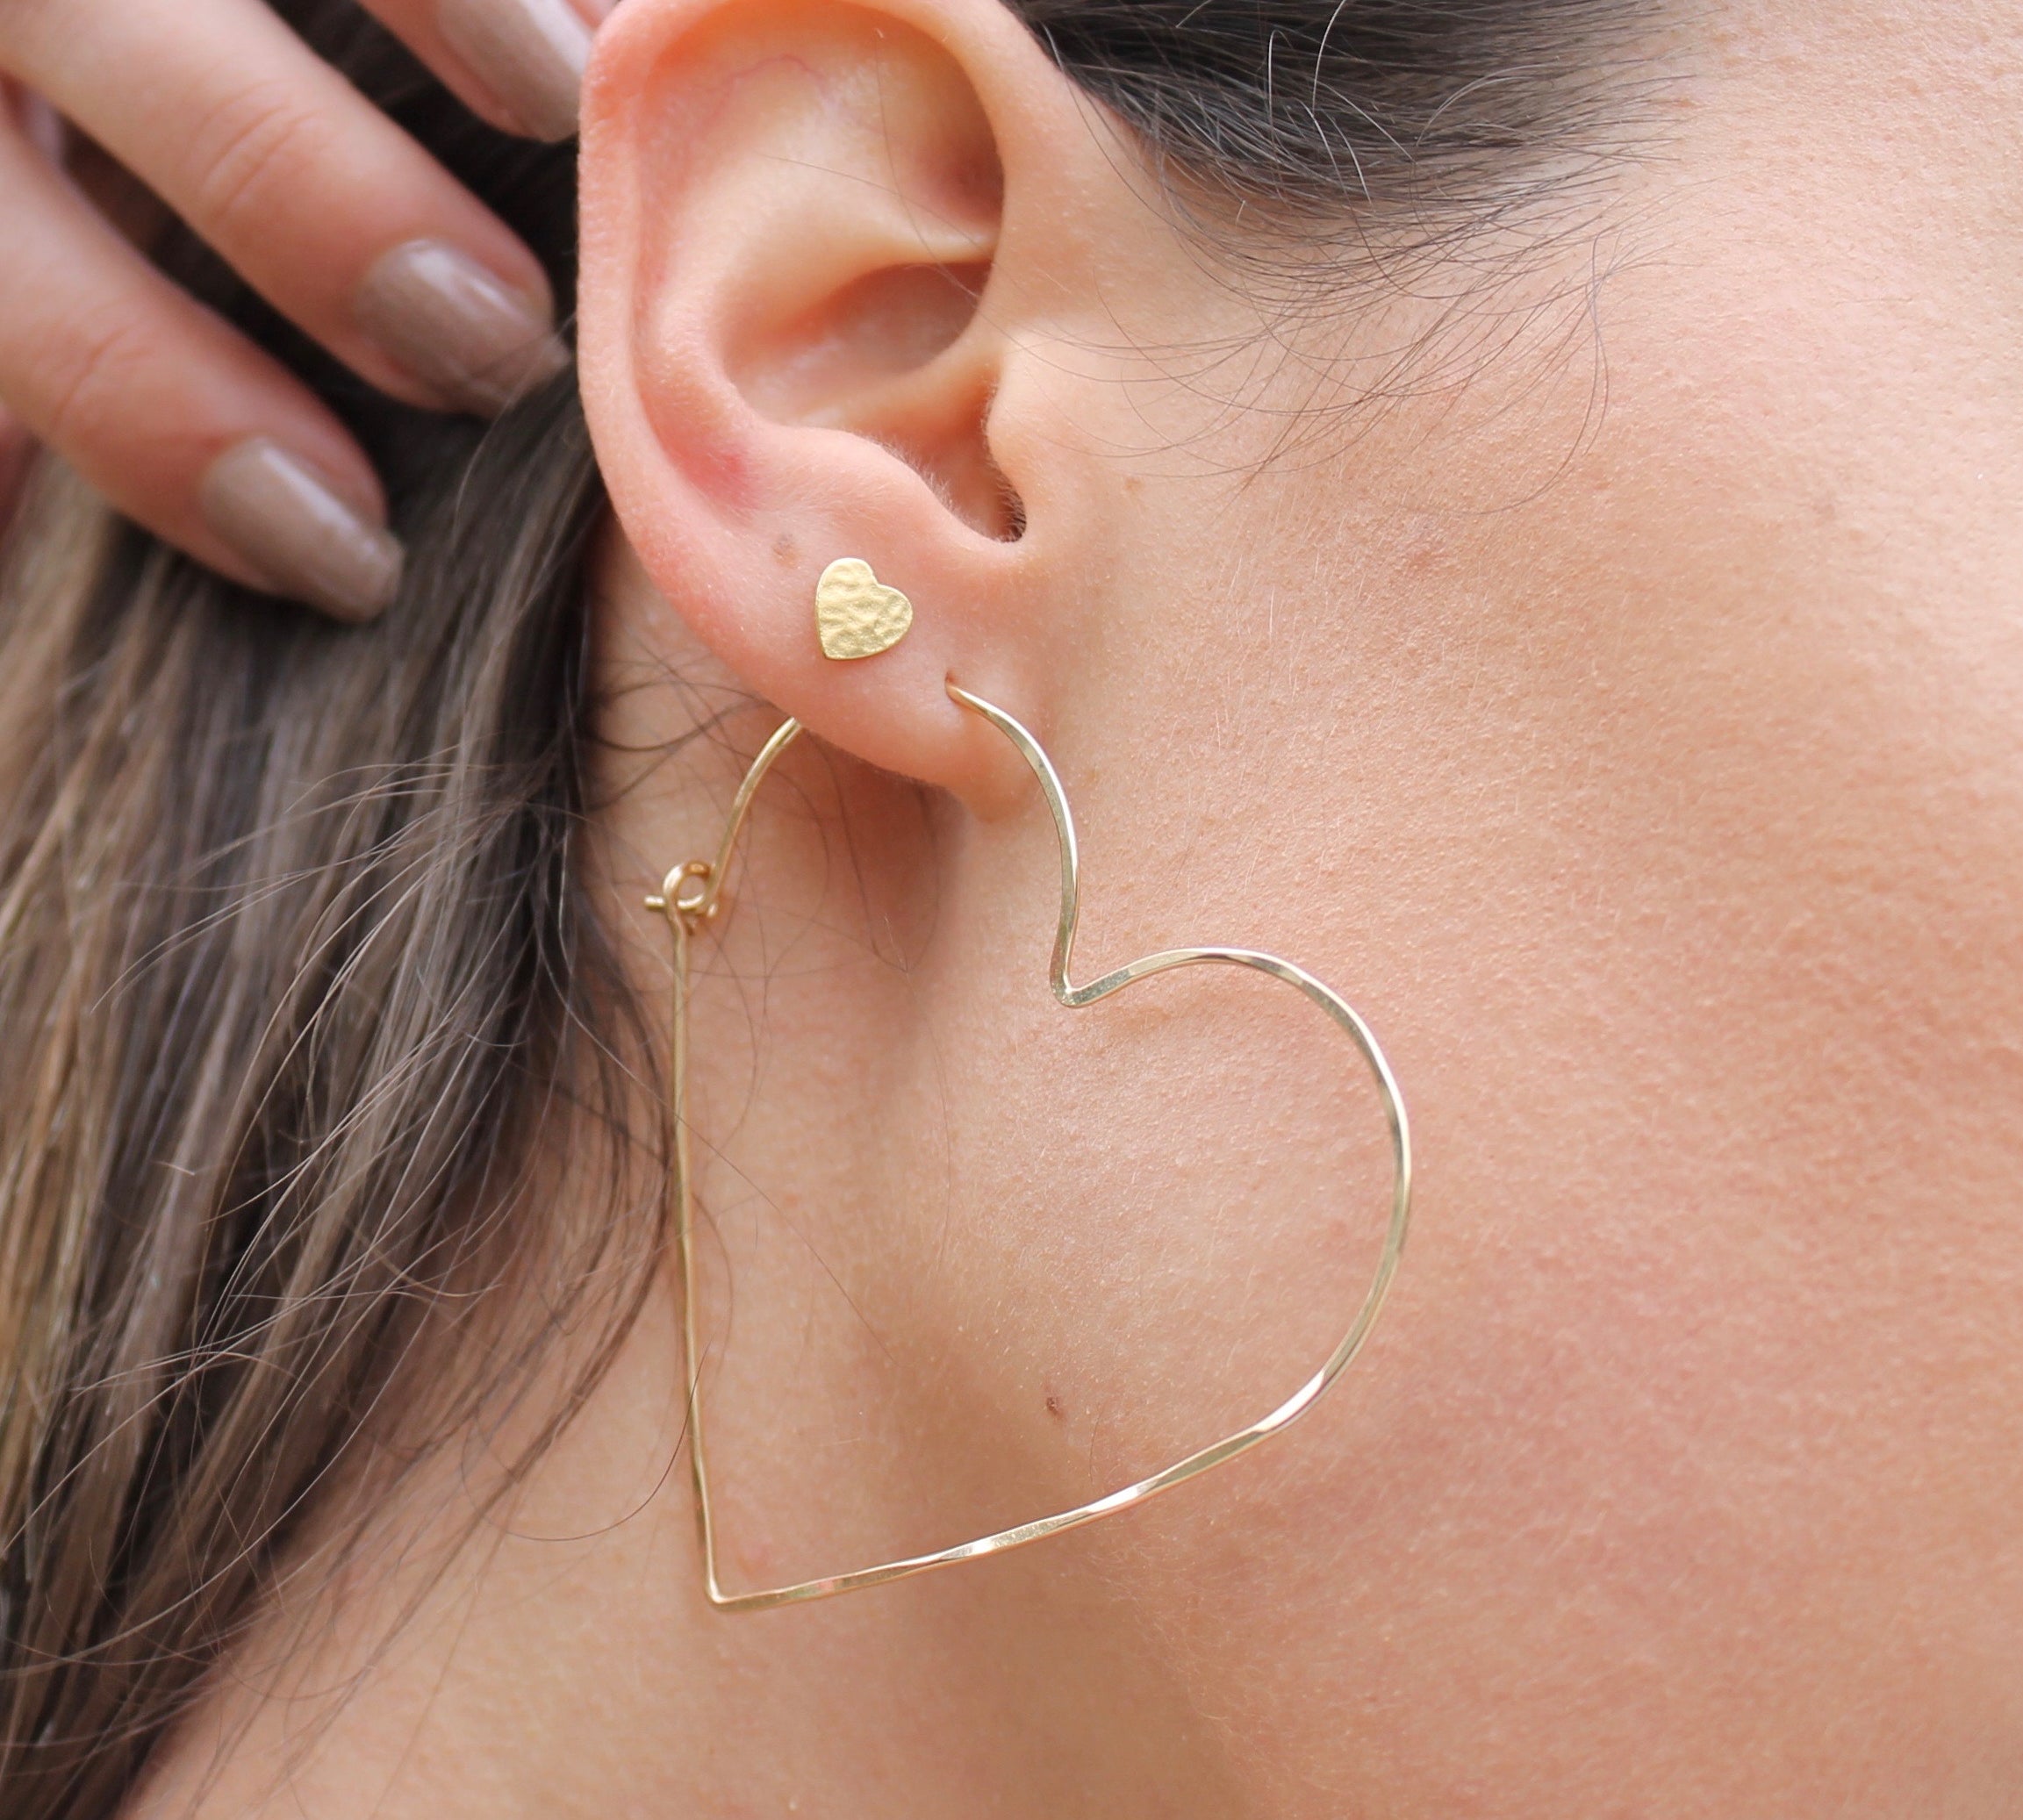 Single Gold Heart Hoop Earring, shown on model